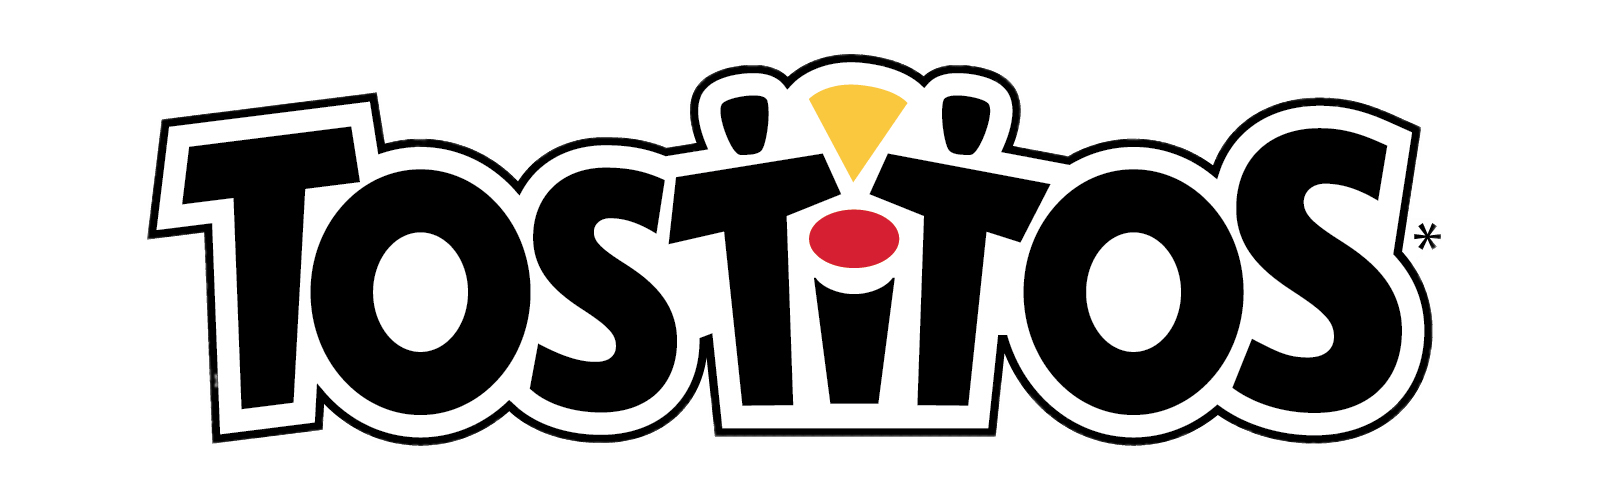 Tostitos Brand Logo